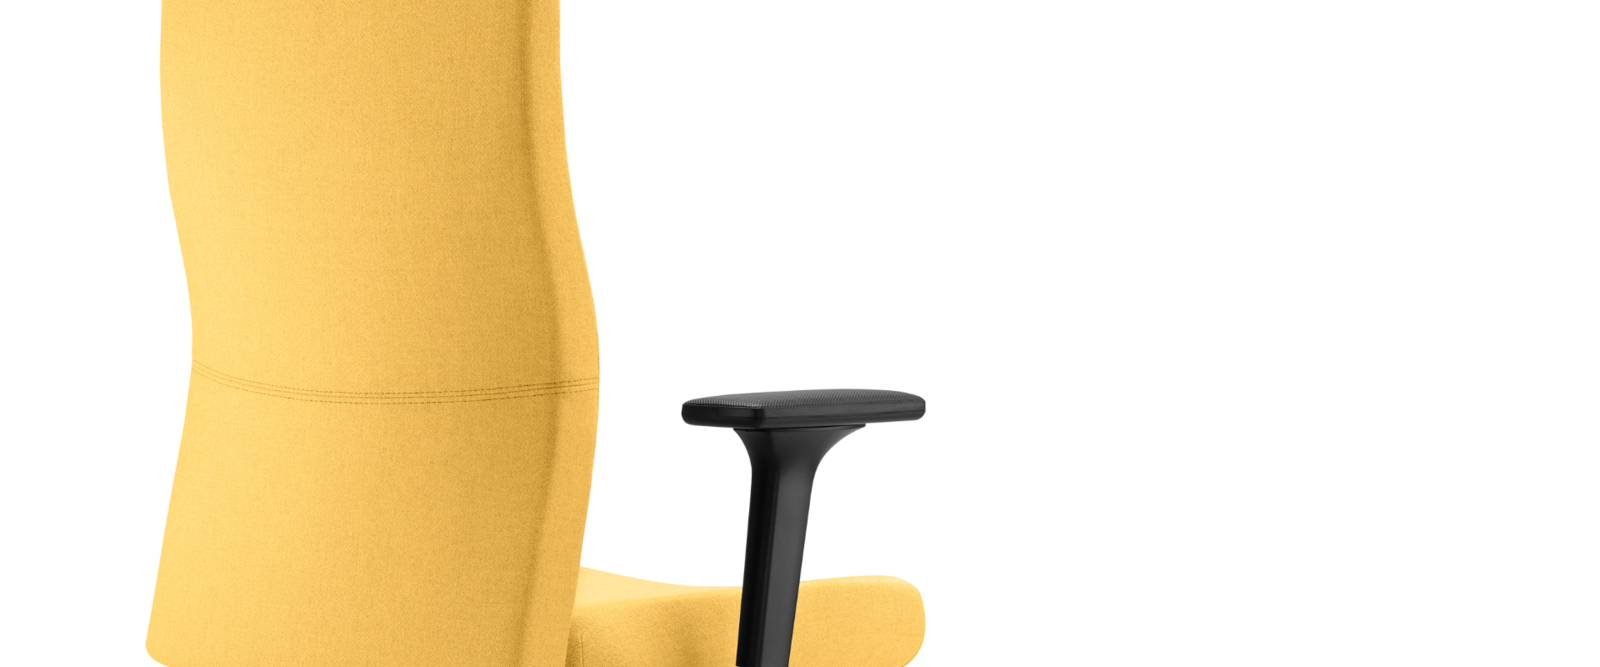 Shape office chair: Configure an ergonomic office chair